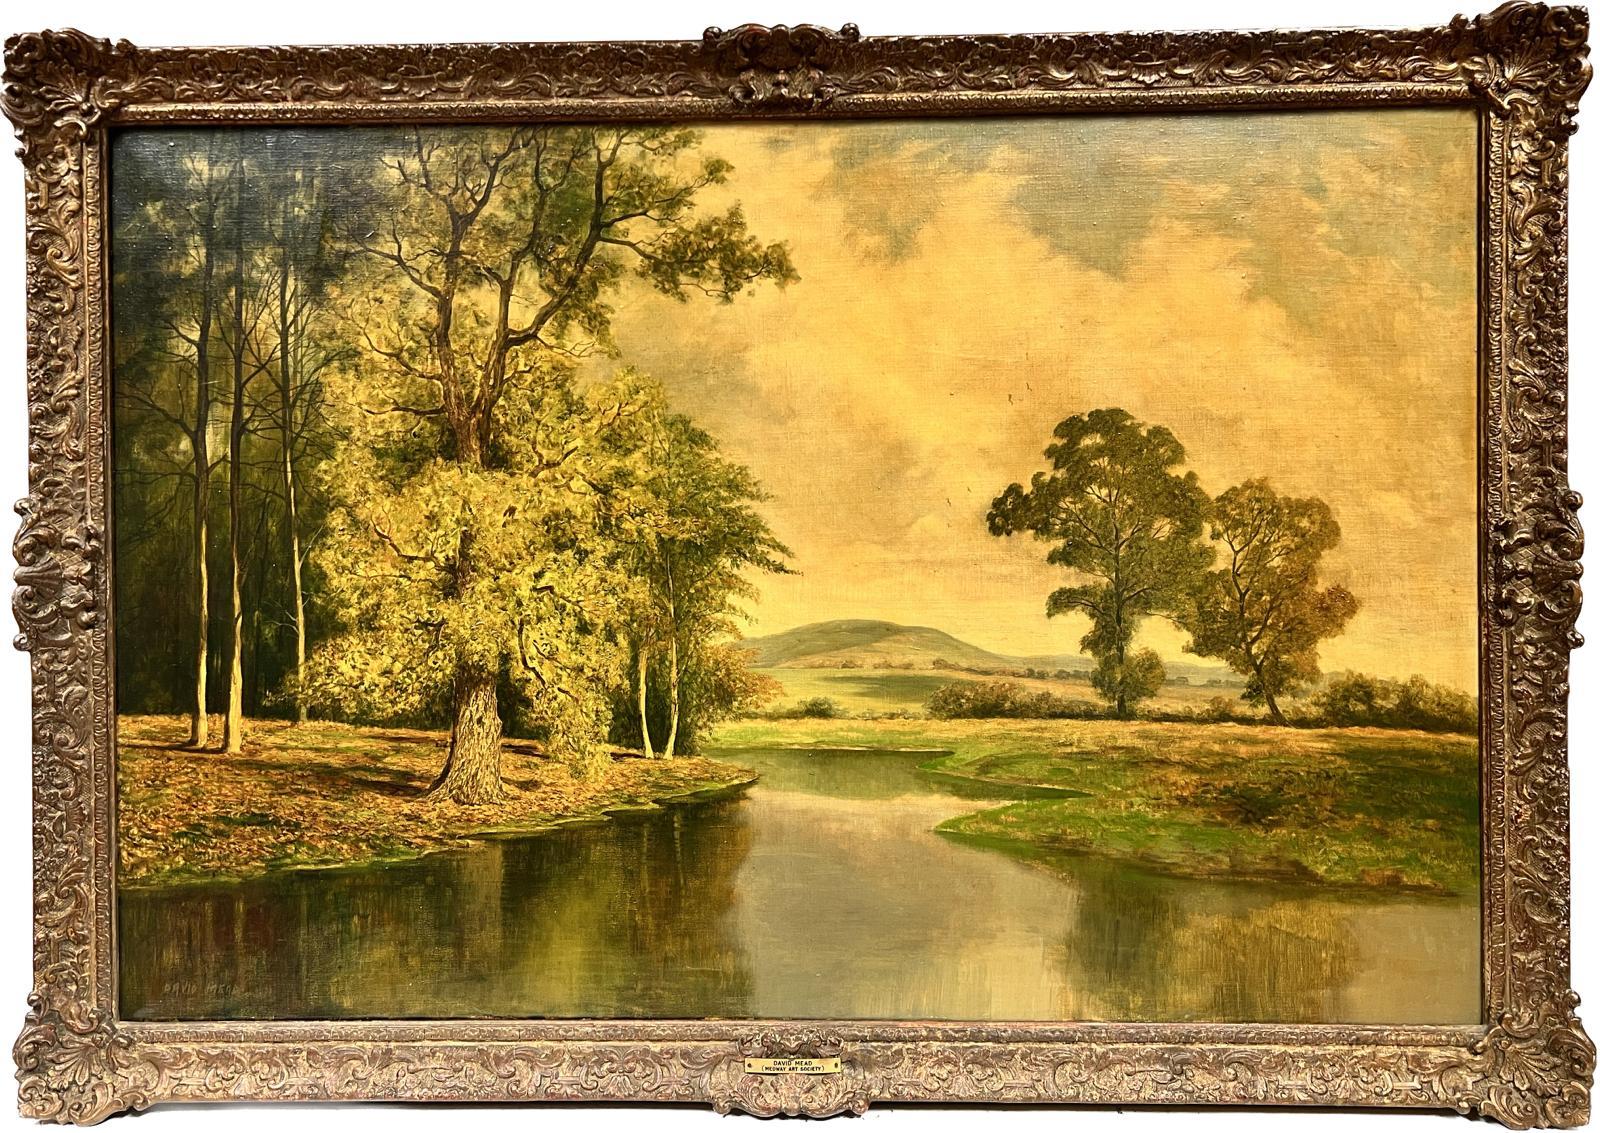 David Mead Landscape Painting - Huge British Oil Painting Golden River Landscape with Rising Hills, framed